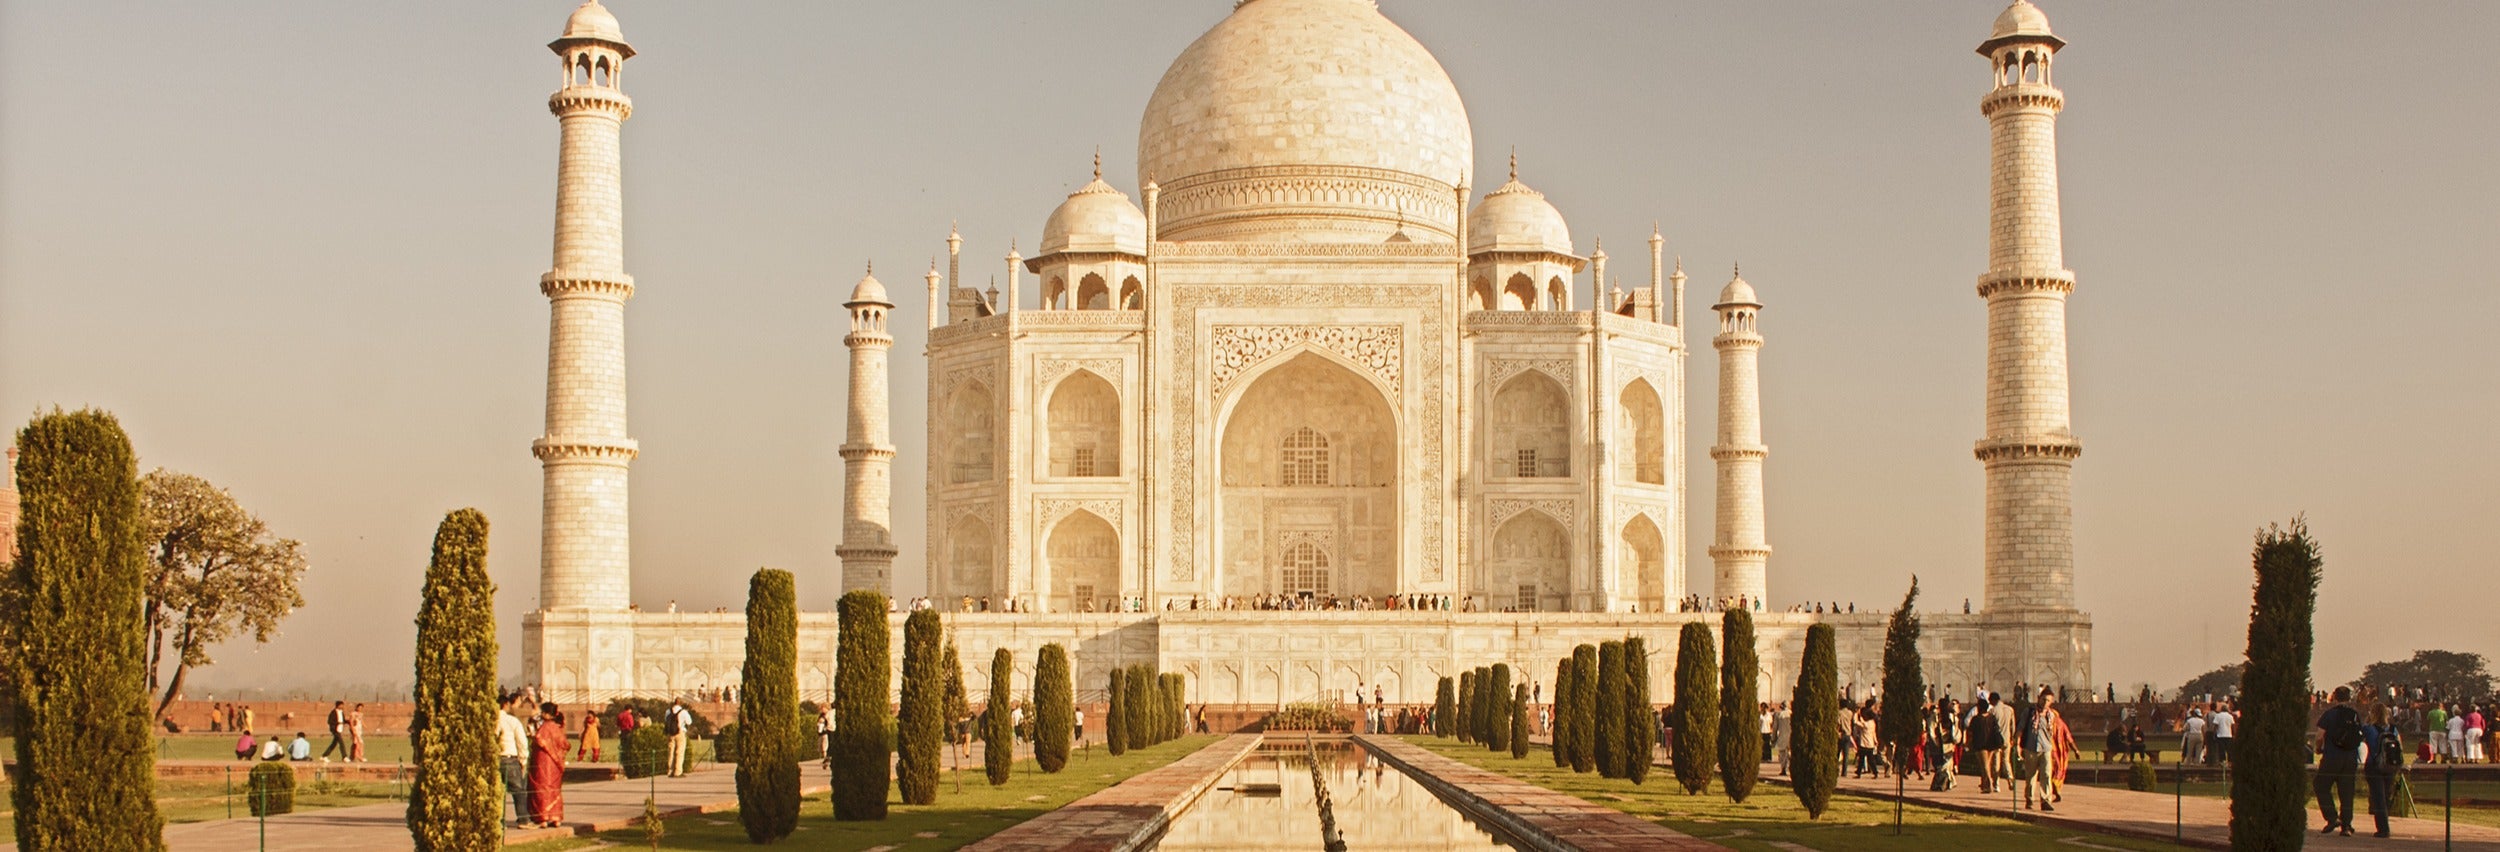 Excursão privada a Agra e Jaipur em 2 dias